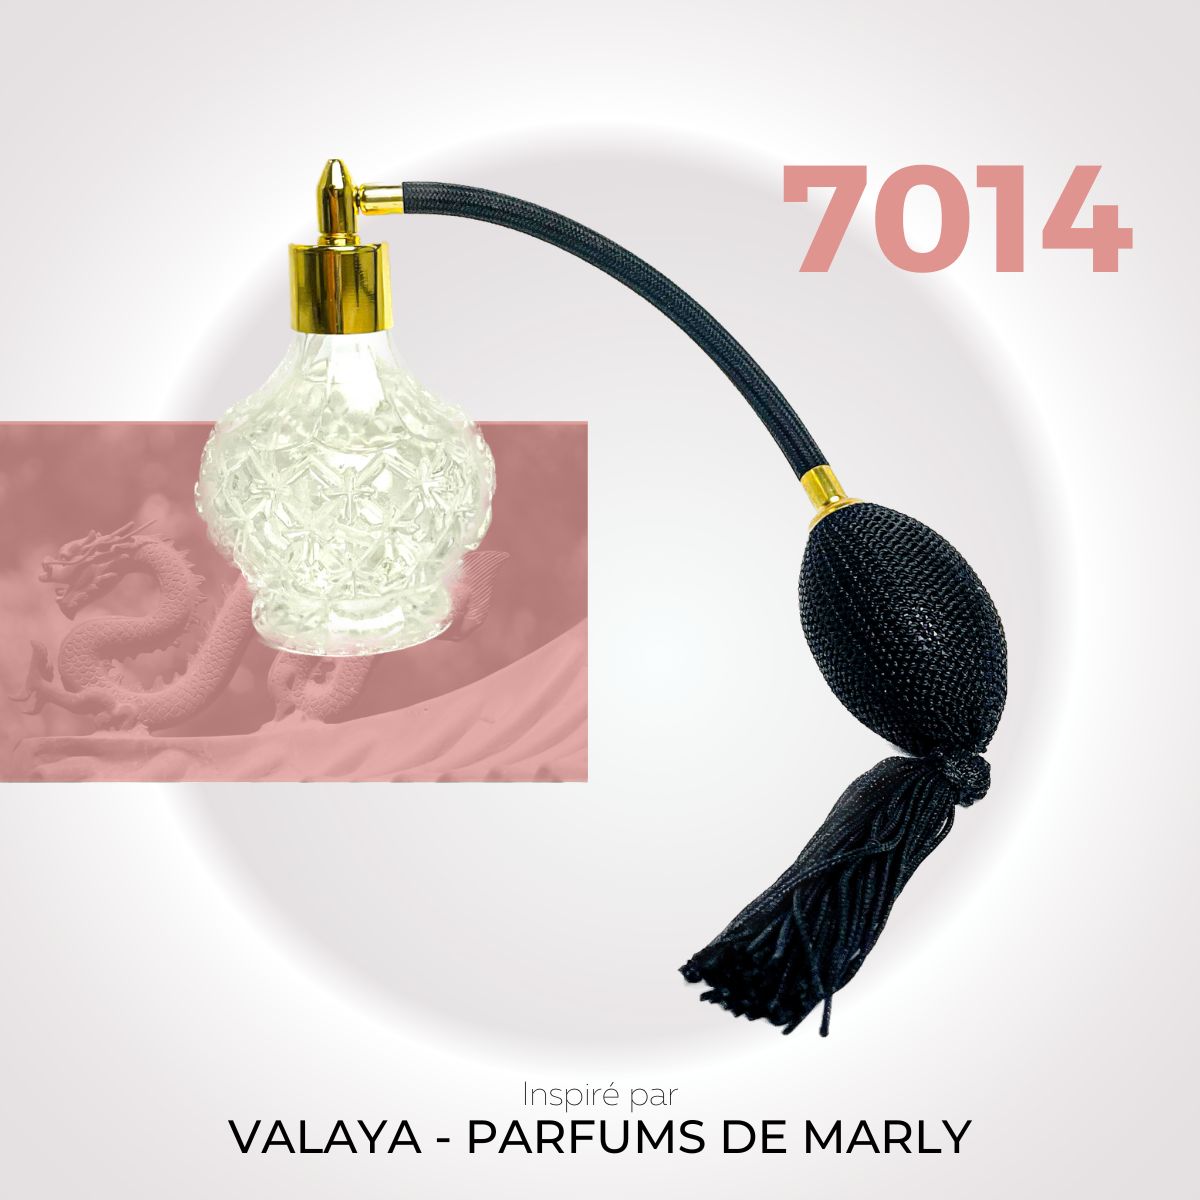 Nº 7014 - Valaya - Parfums de Marly